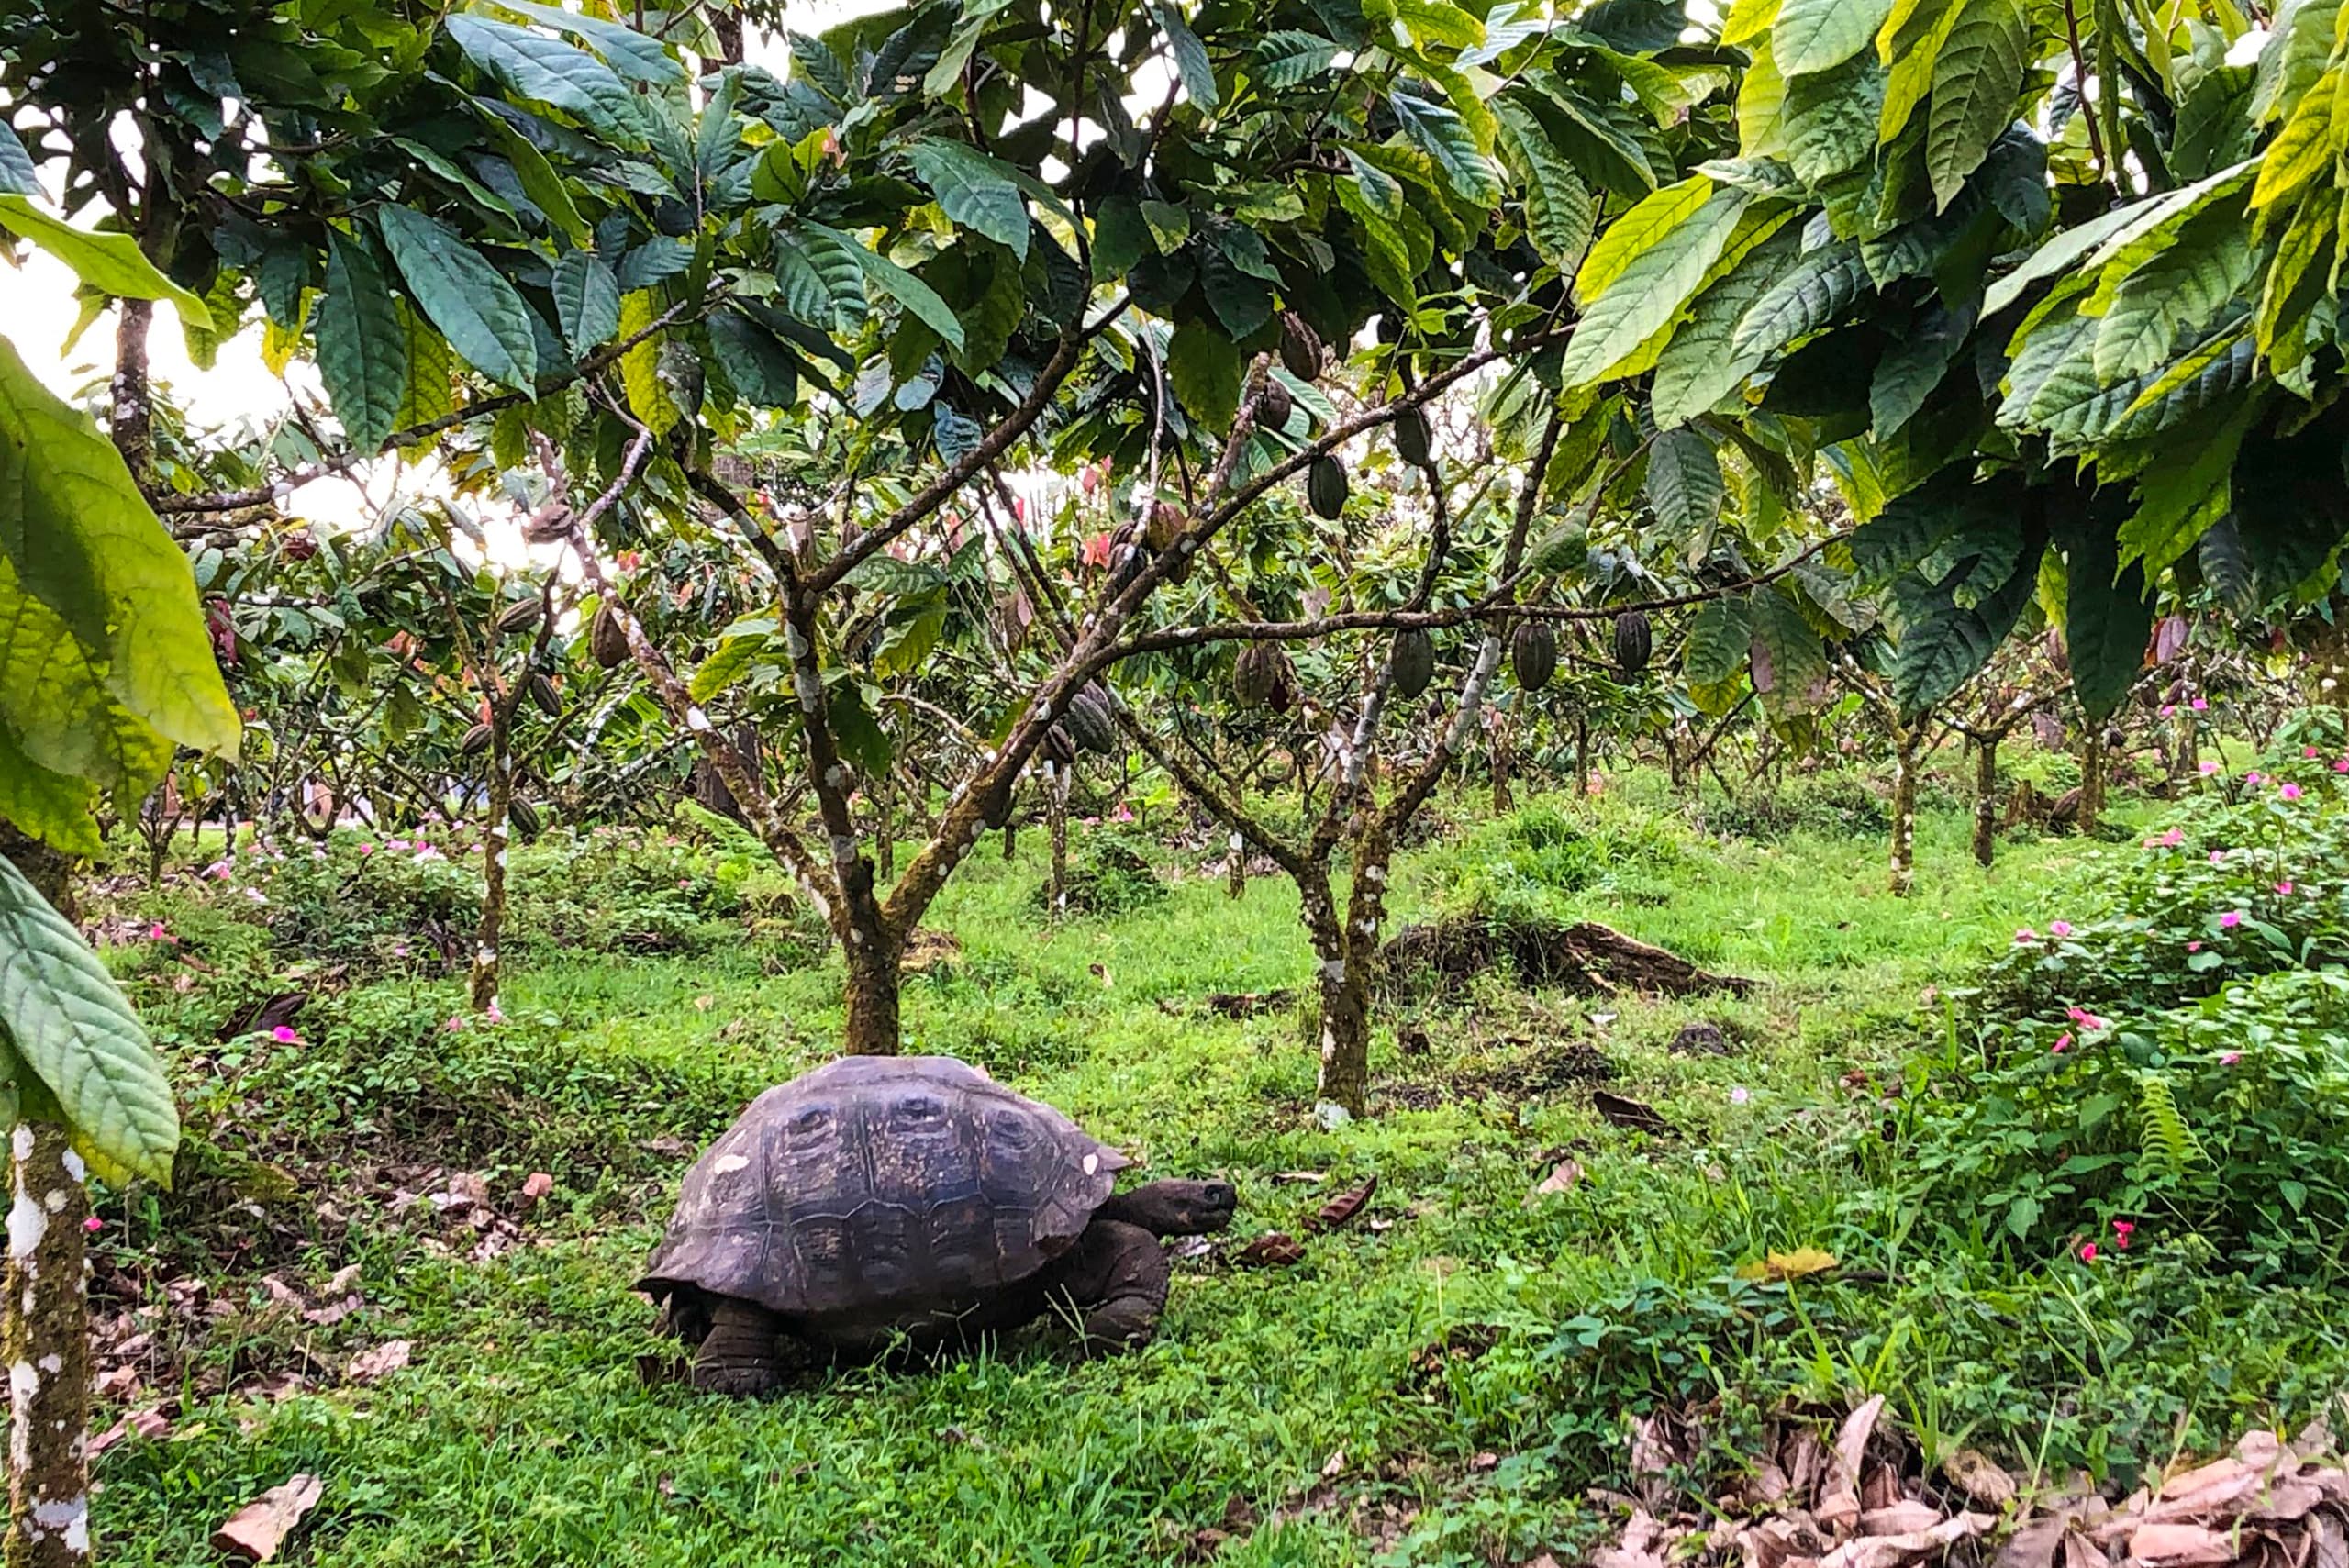 TO'AK | Schokolade »To’ak Galapagos Harvest 2019« 75% | 50g